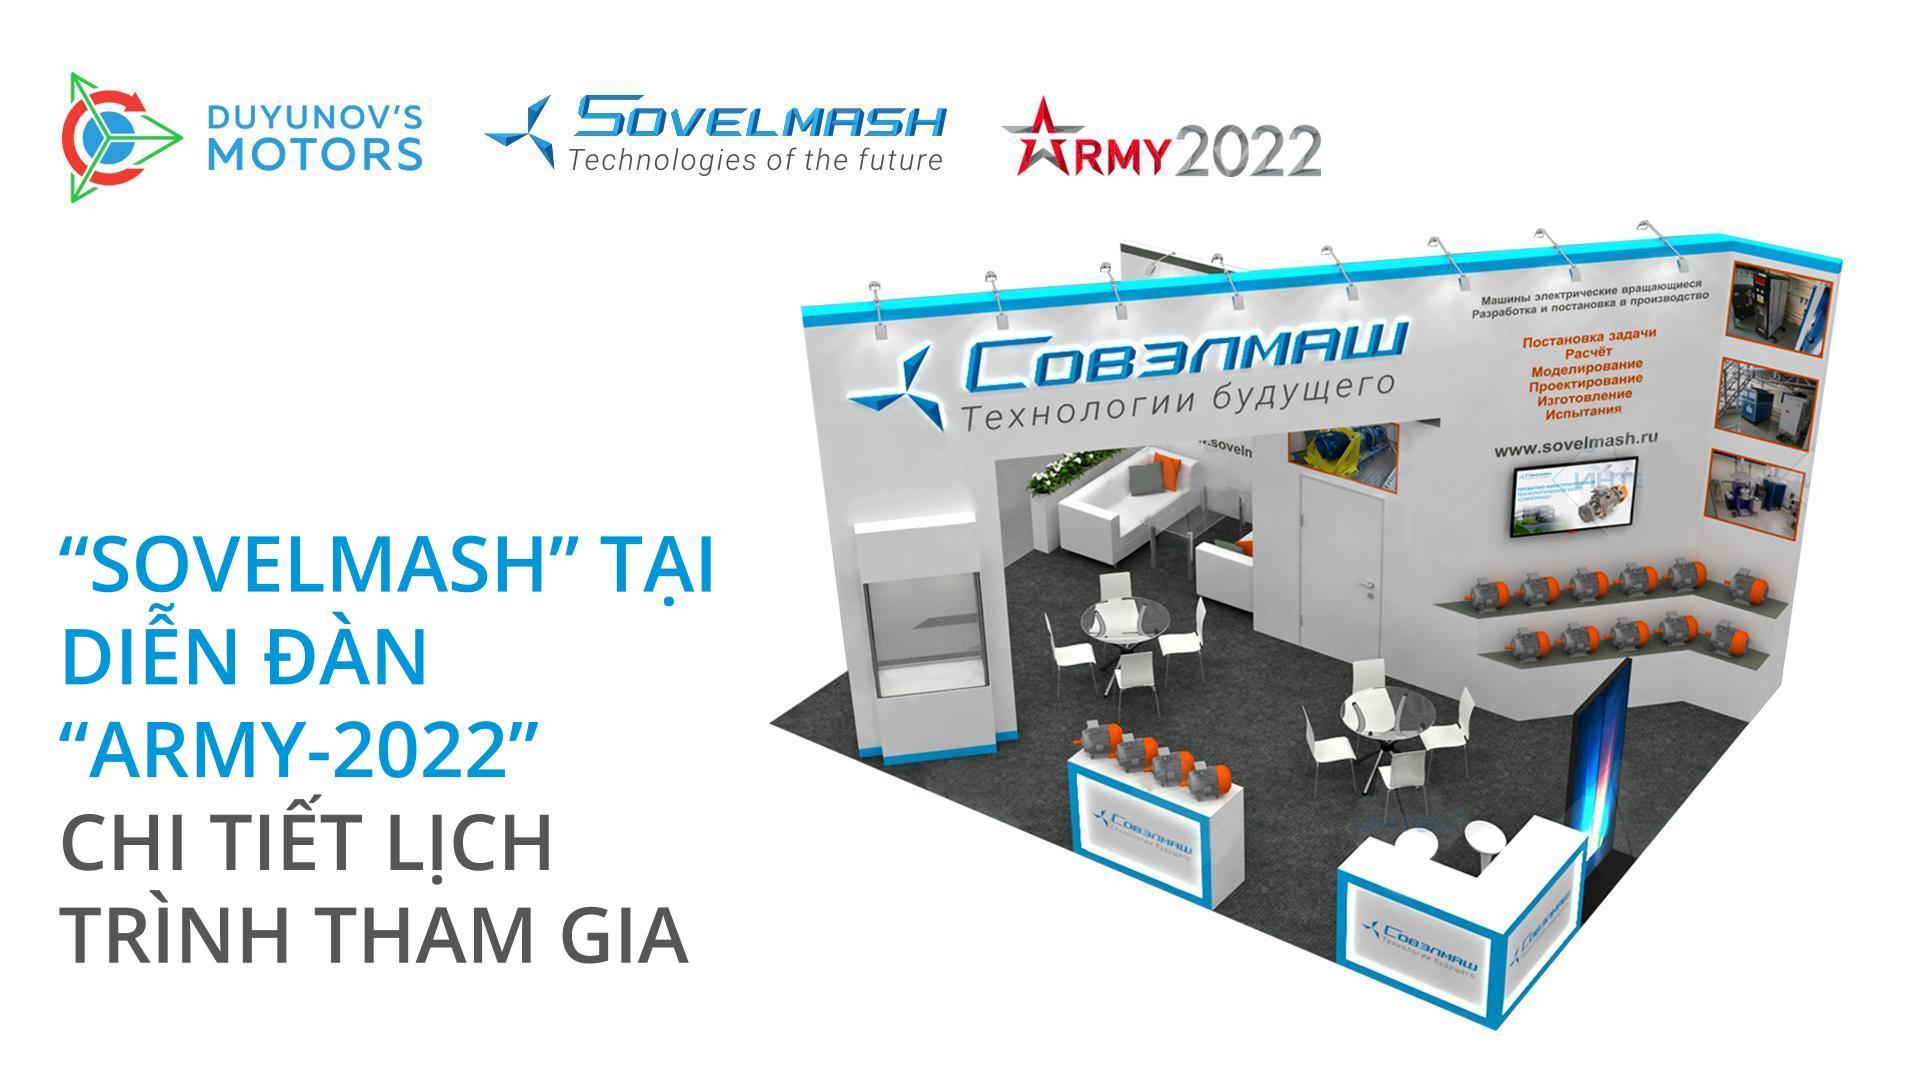 "Sovelmash" tại diễn đàn "Army-2022": Chi tiết về lịch trình tham gia